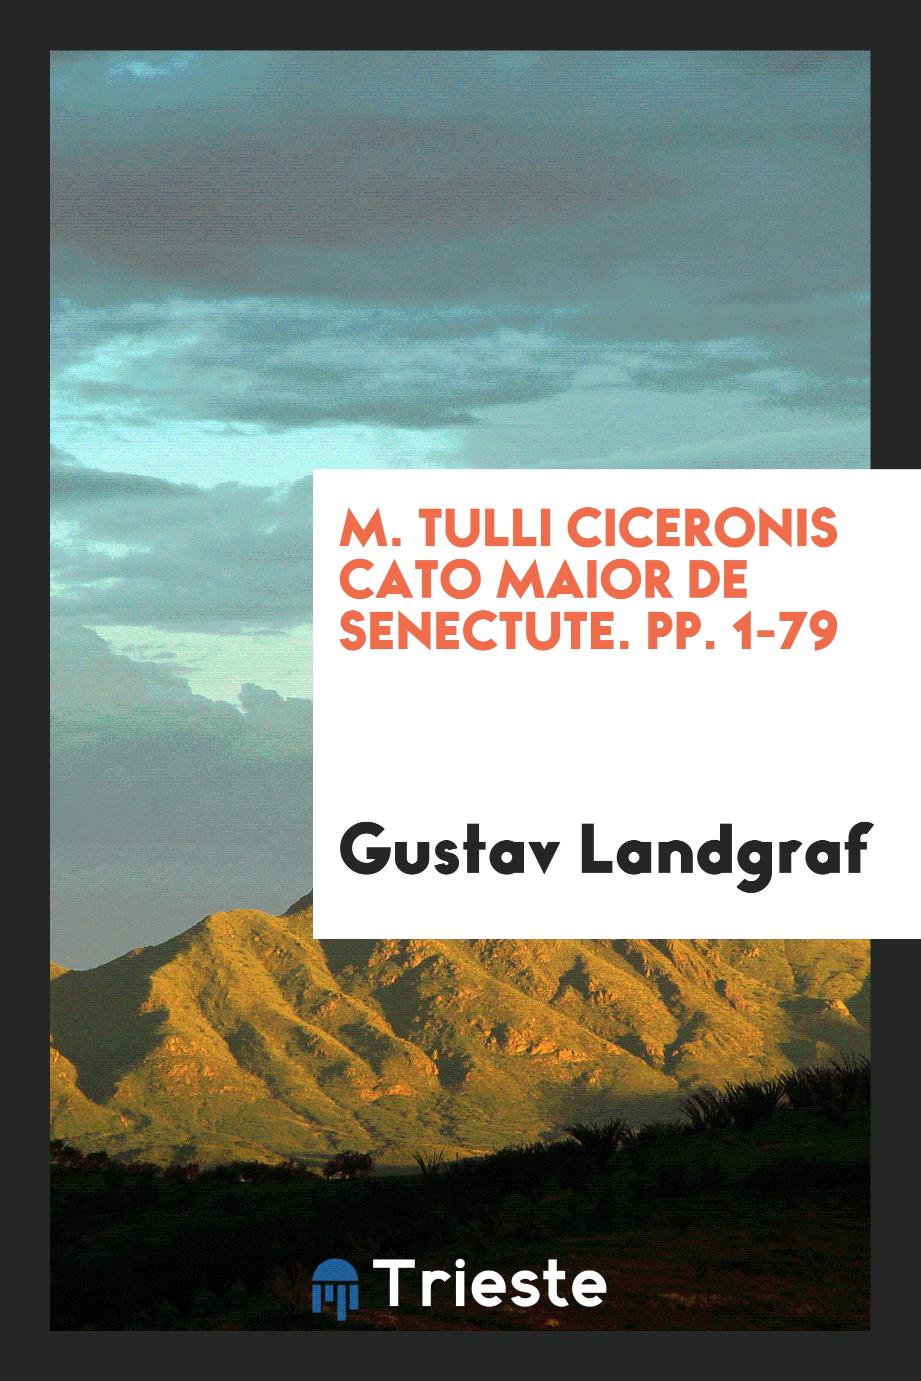 M. Tulli Ciceronis Cato Maior de Senectute. pp. 1-79